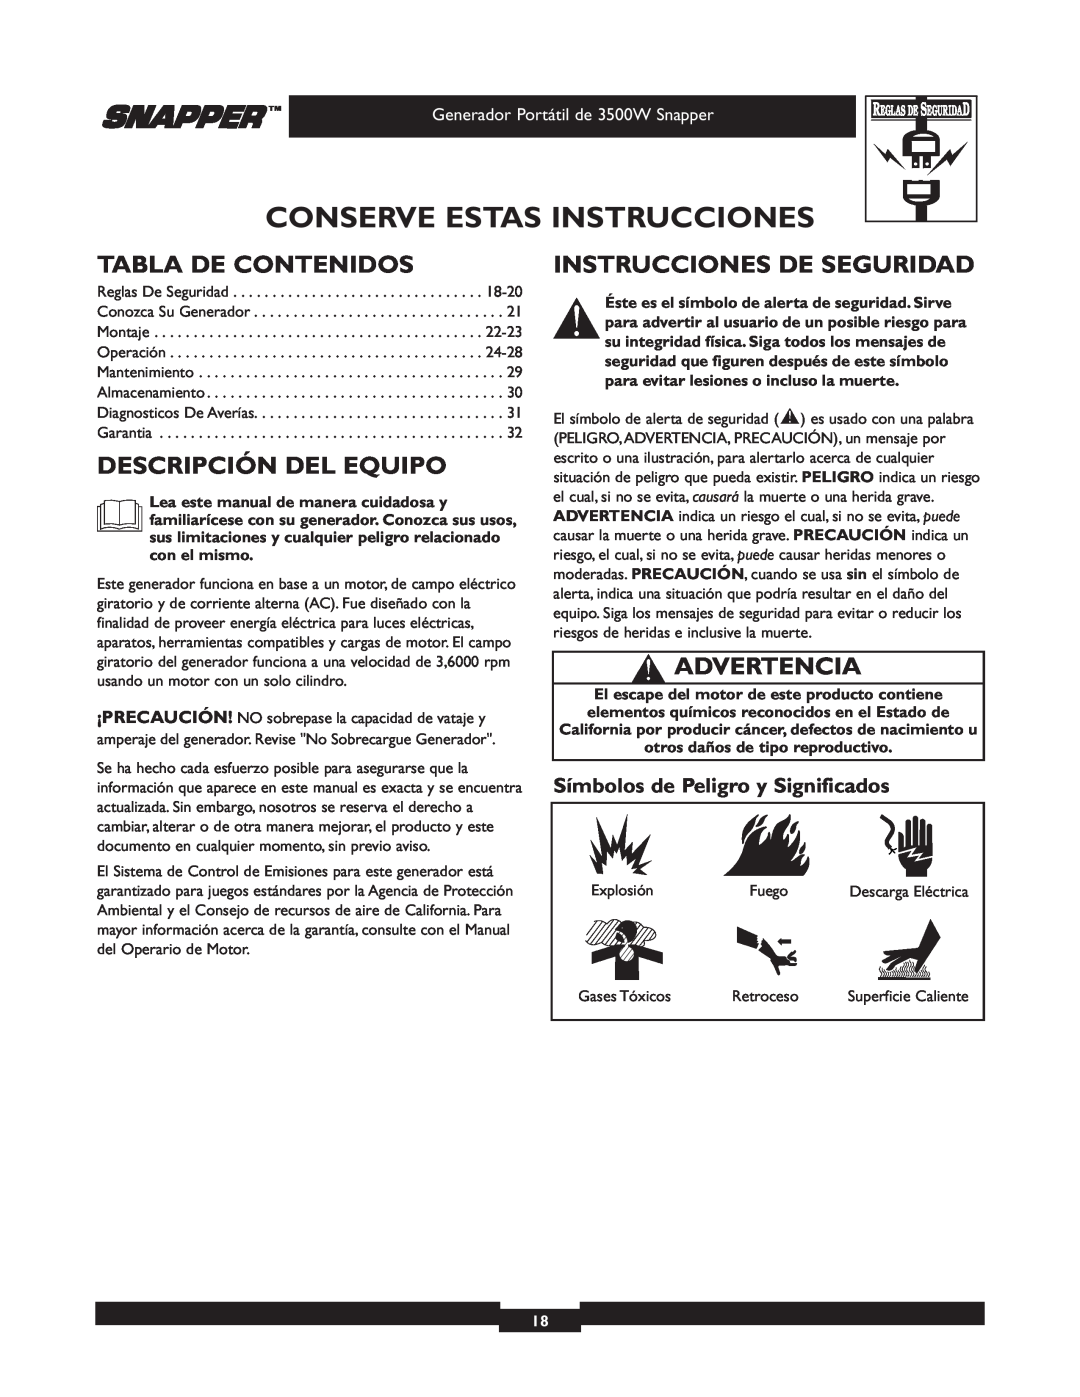 Snapper 030214 manual Tabla De Contenidos, Descripción Del Equipo, Instrucciones De Seguridad, Advertencia 